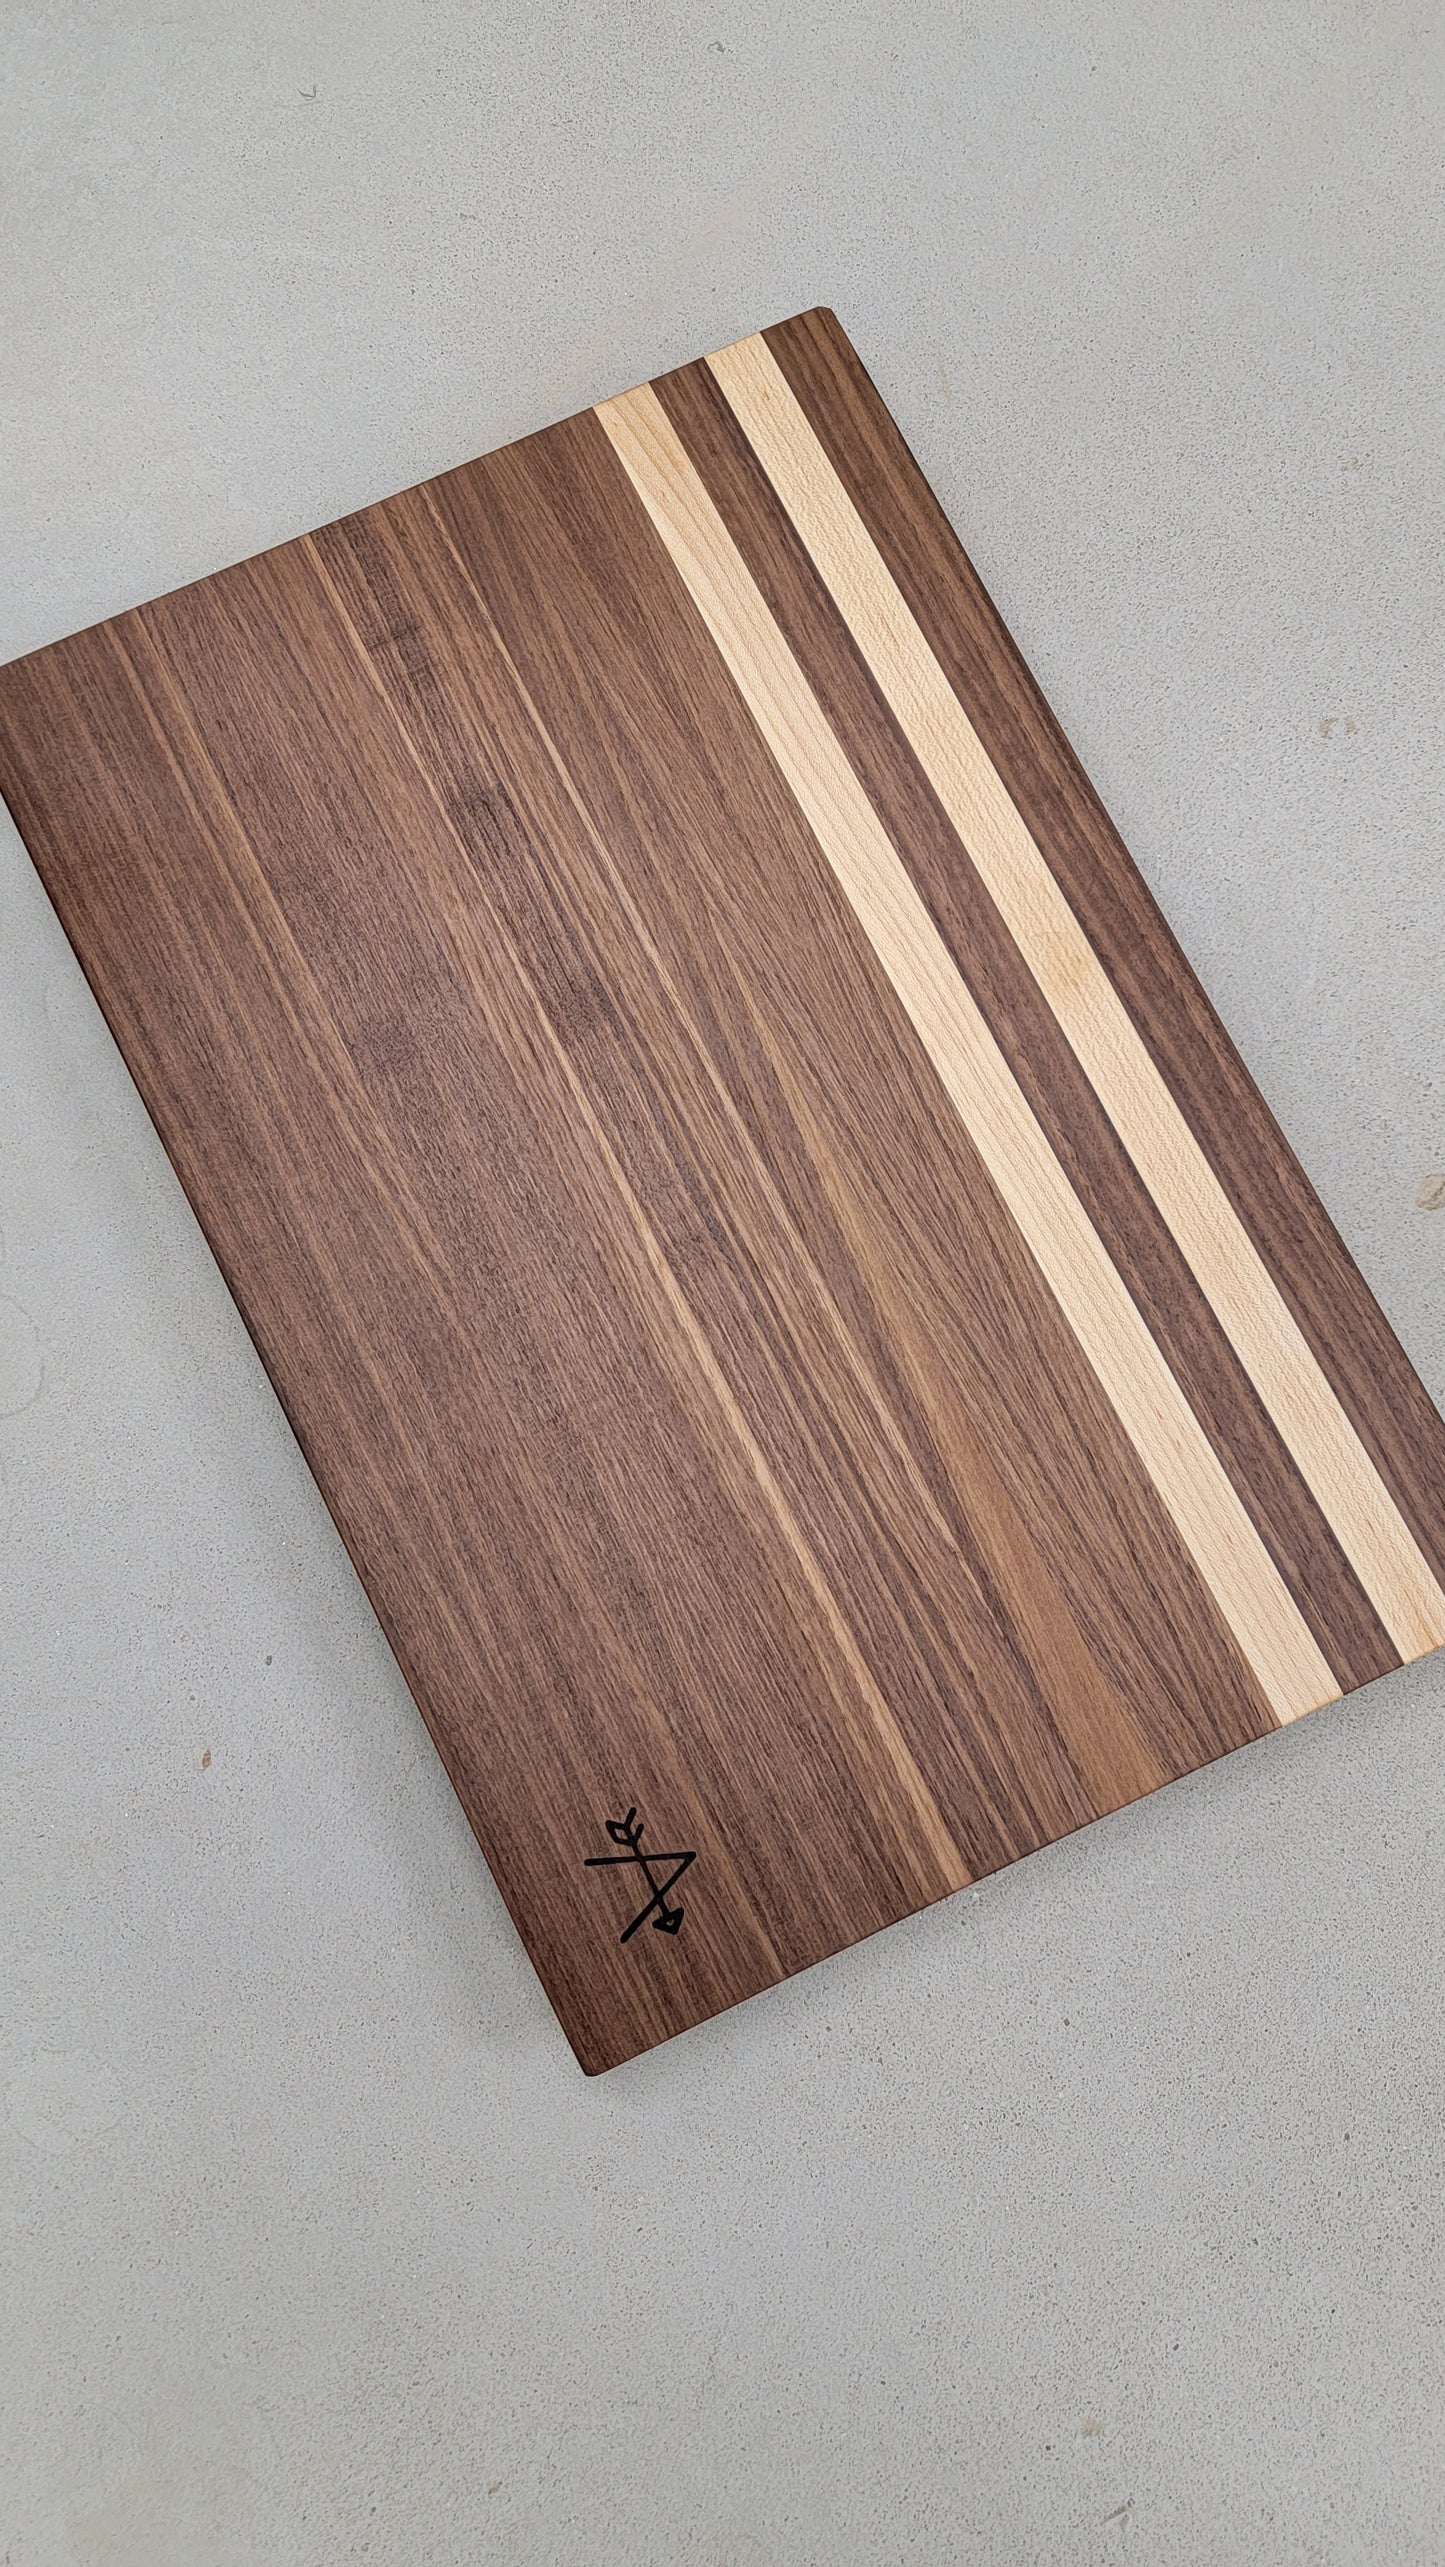 Walnut and Maple Wood Cutting Board